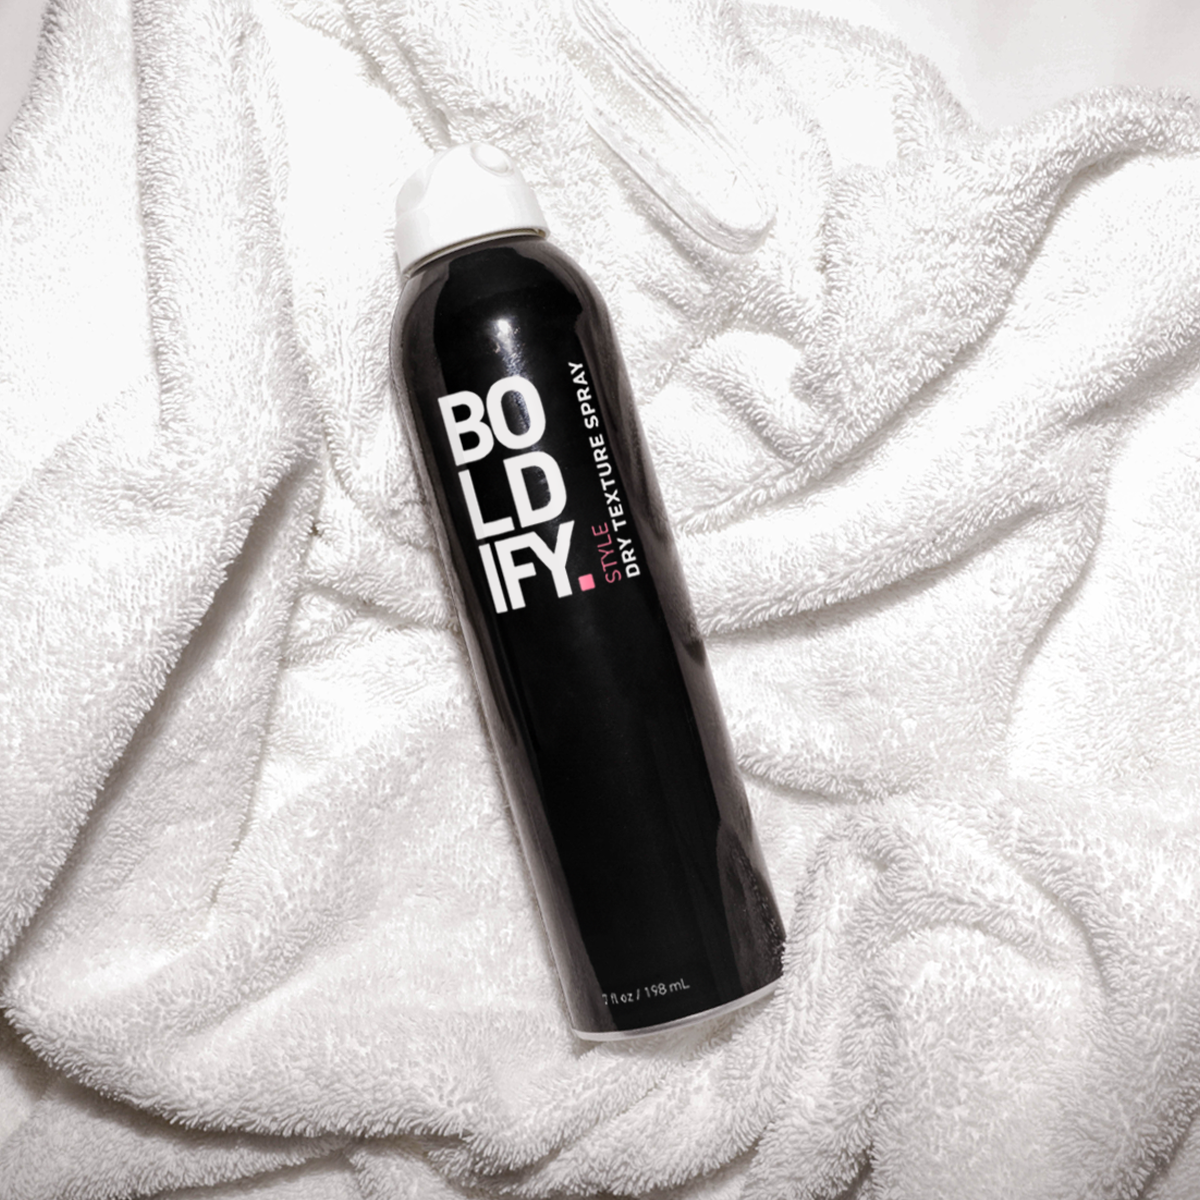  Boldify Dry Texture Spray for Hair - Hair Volumizer